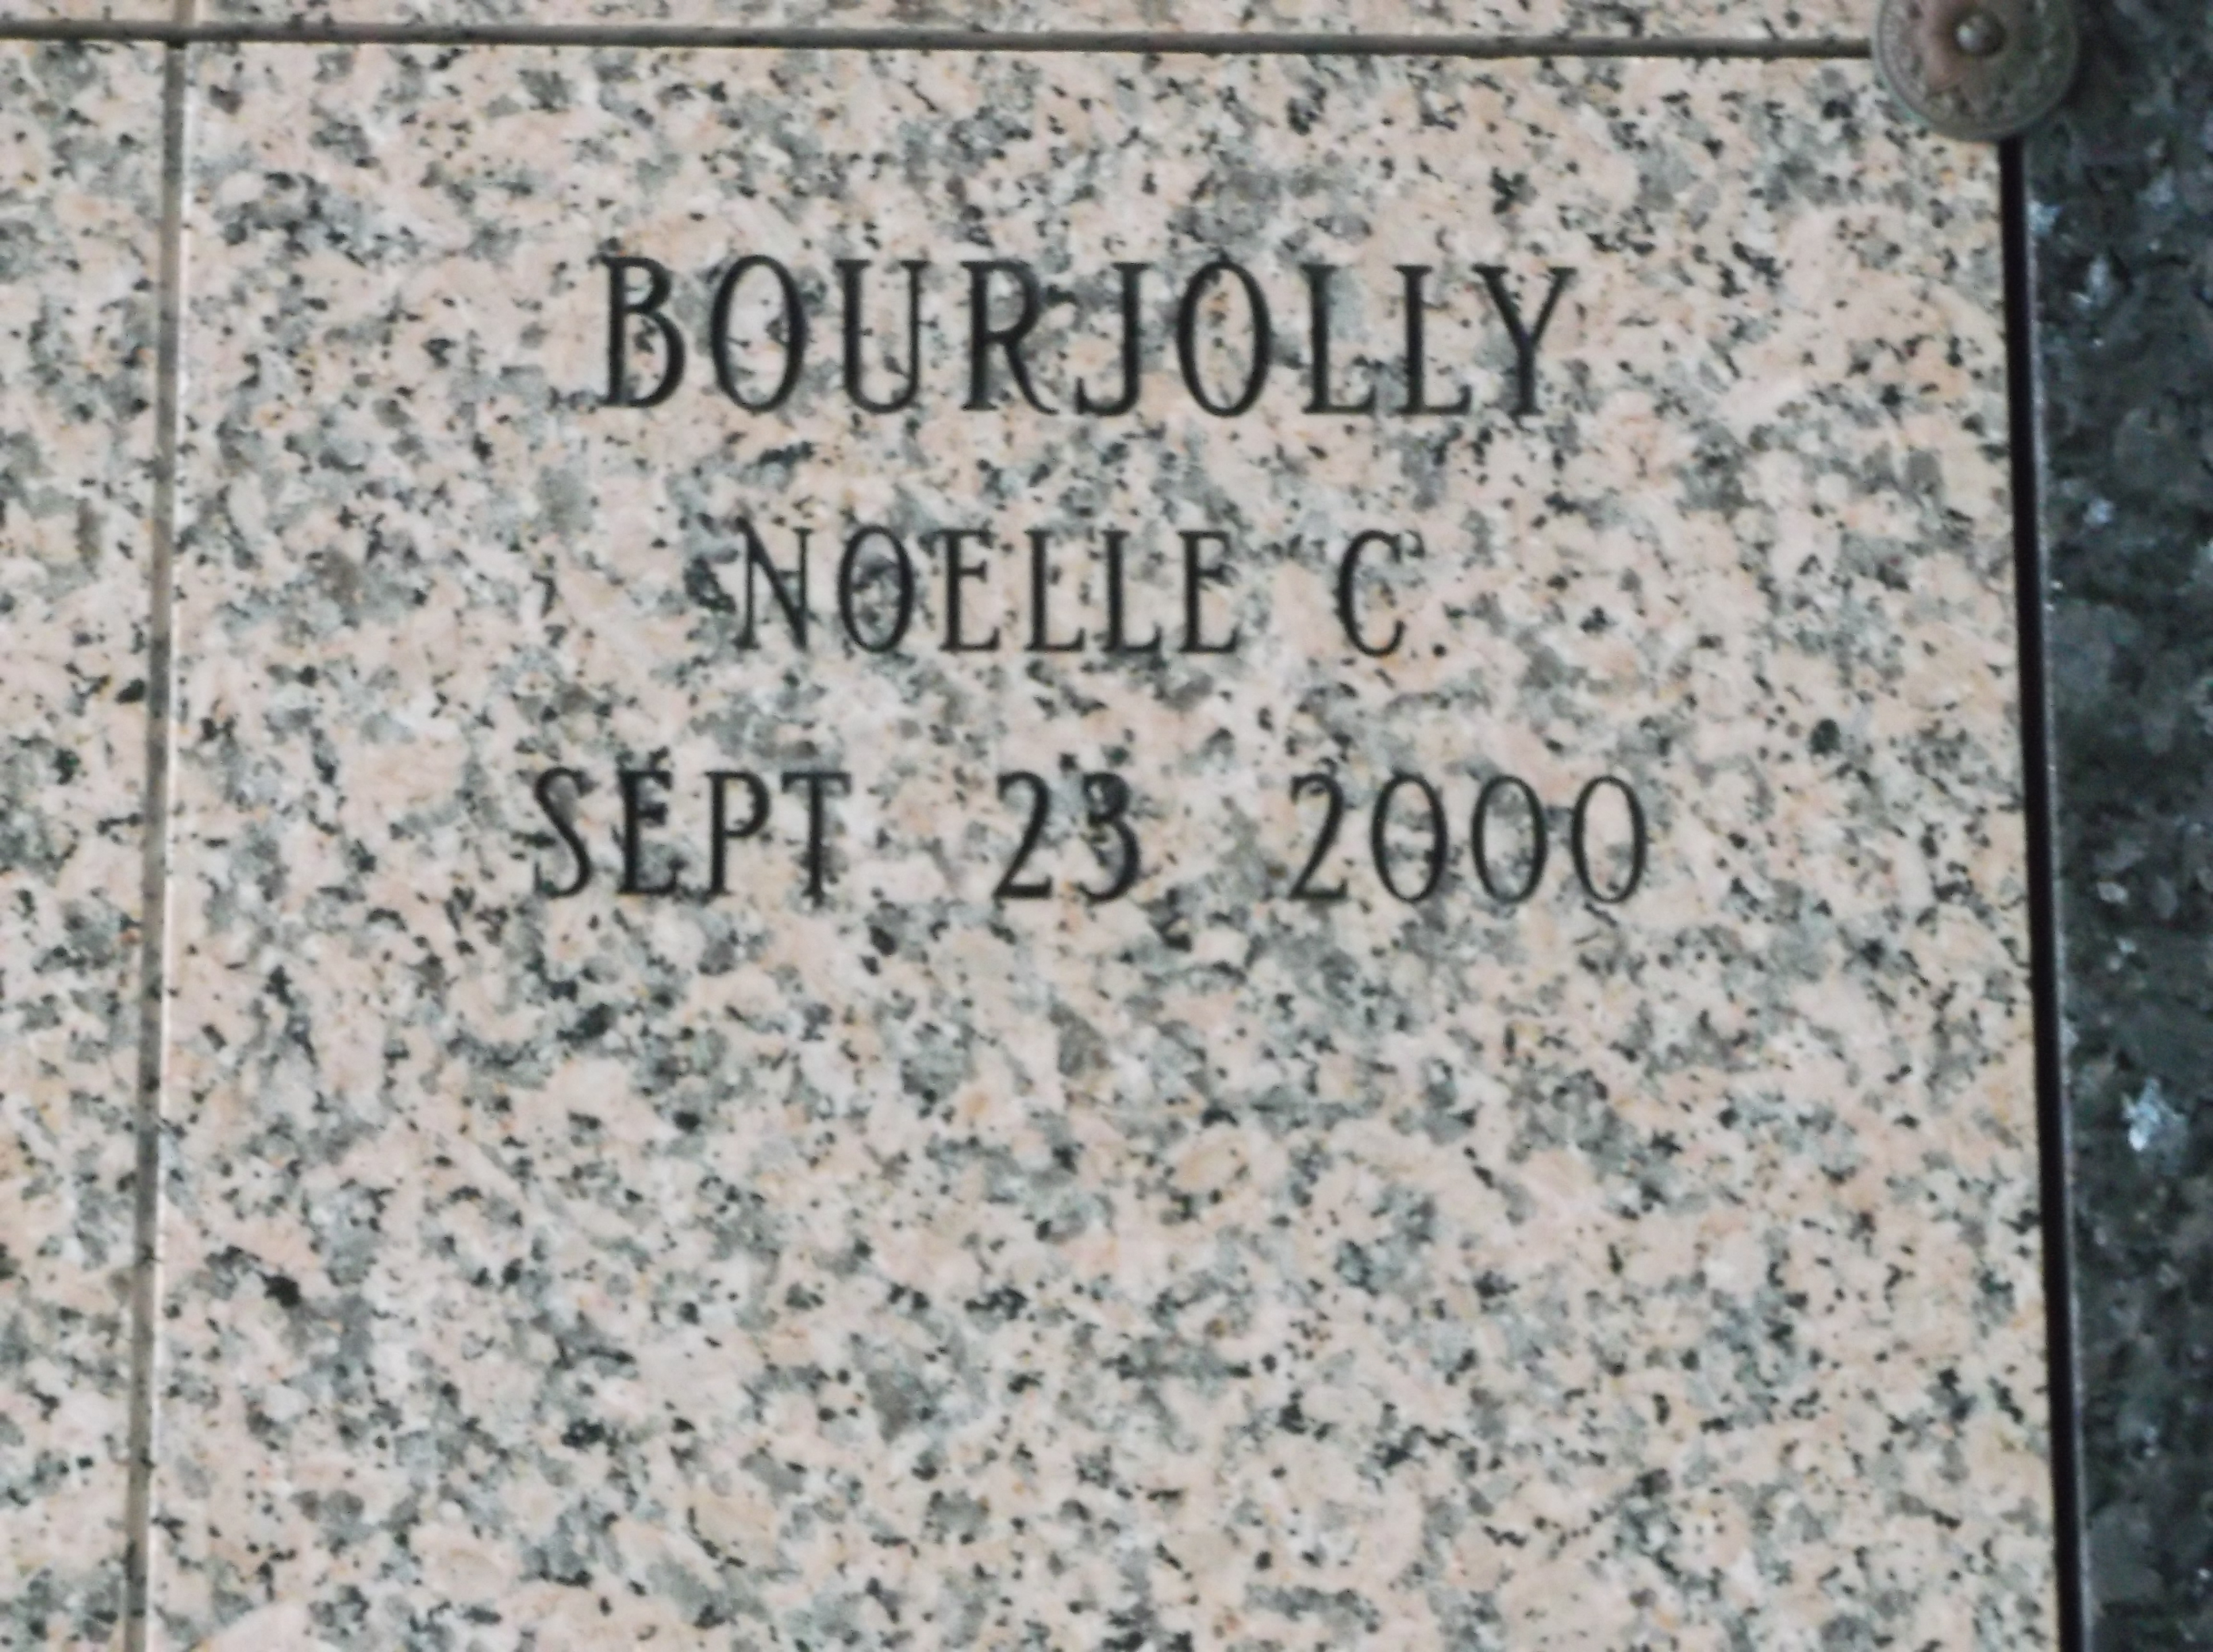 Noelle C Bourjolly